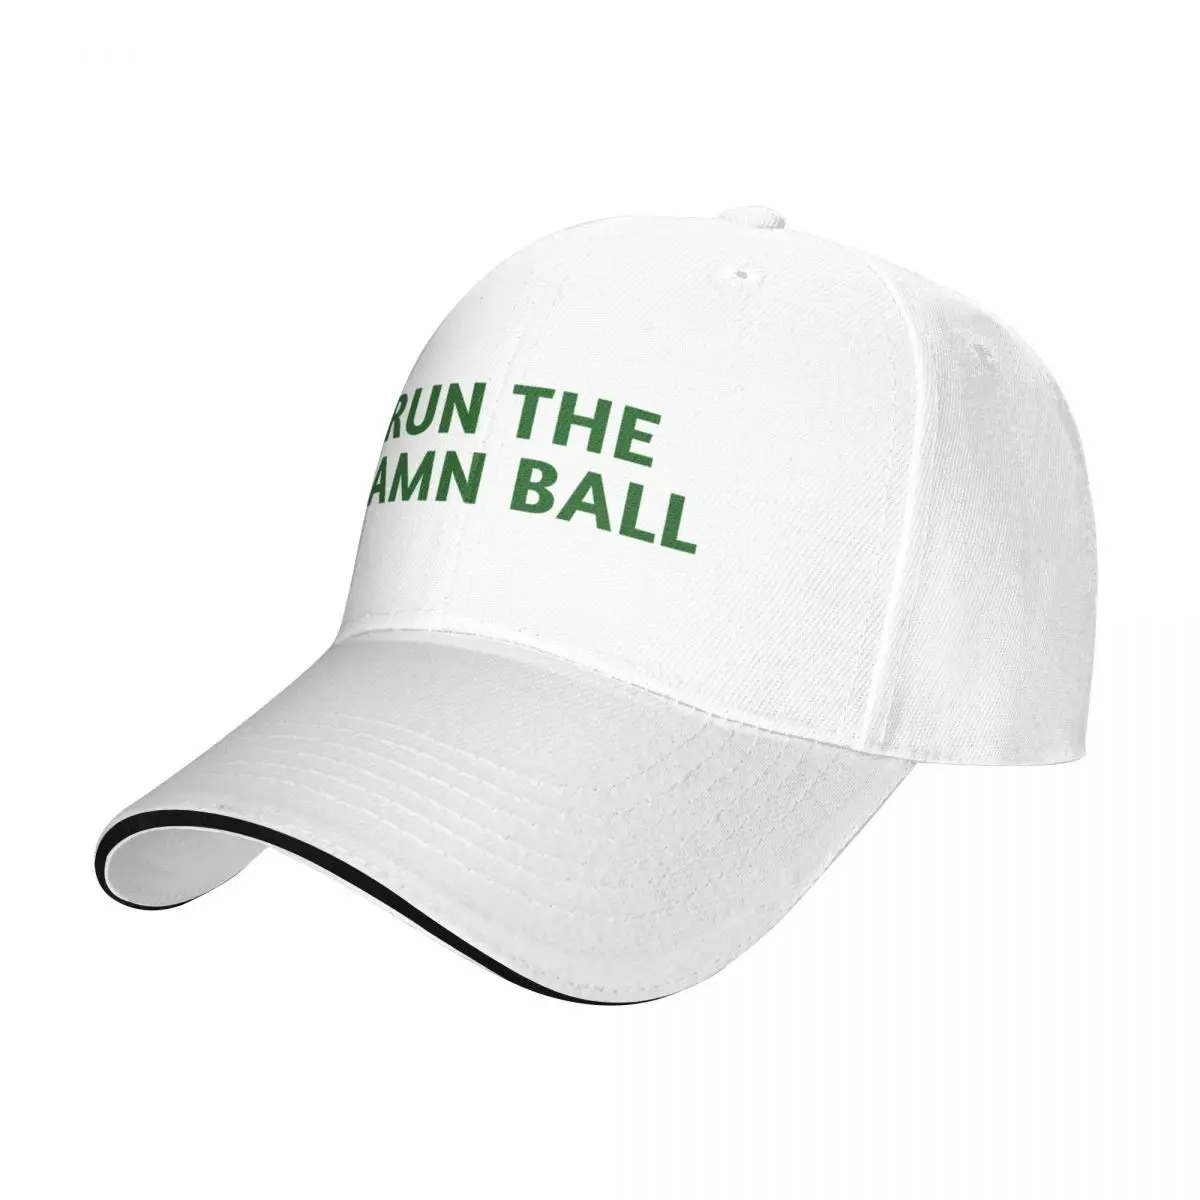 Run the damn топка / Зелен / Зелена шапка run the damn топка Бейзболна Шапка Аниме Шапка Шапка за голф Мъжки летни шапки, Шапка, Дамски Мъжки Изображение 1